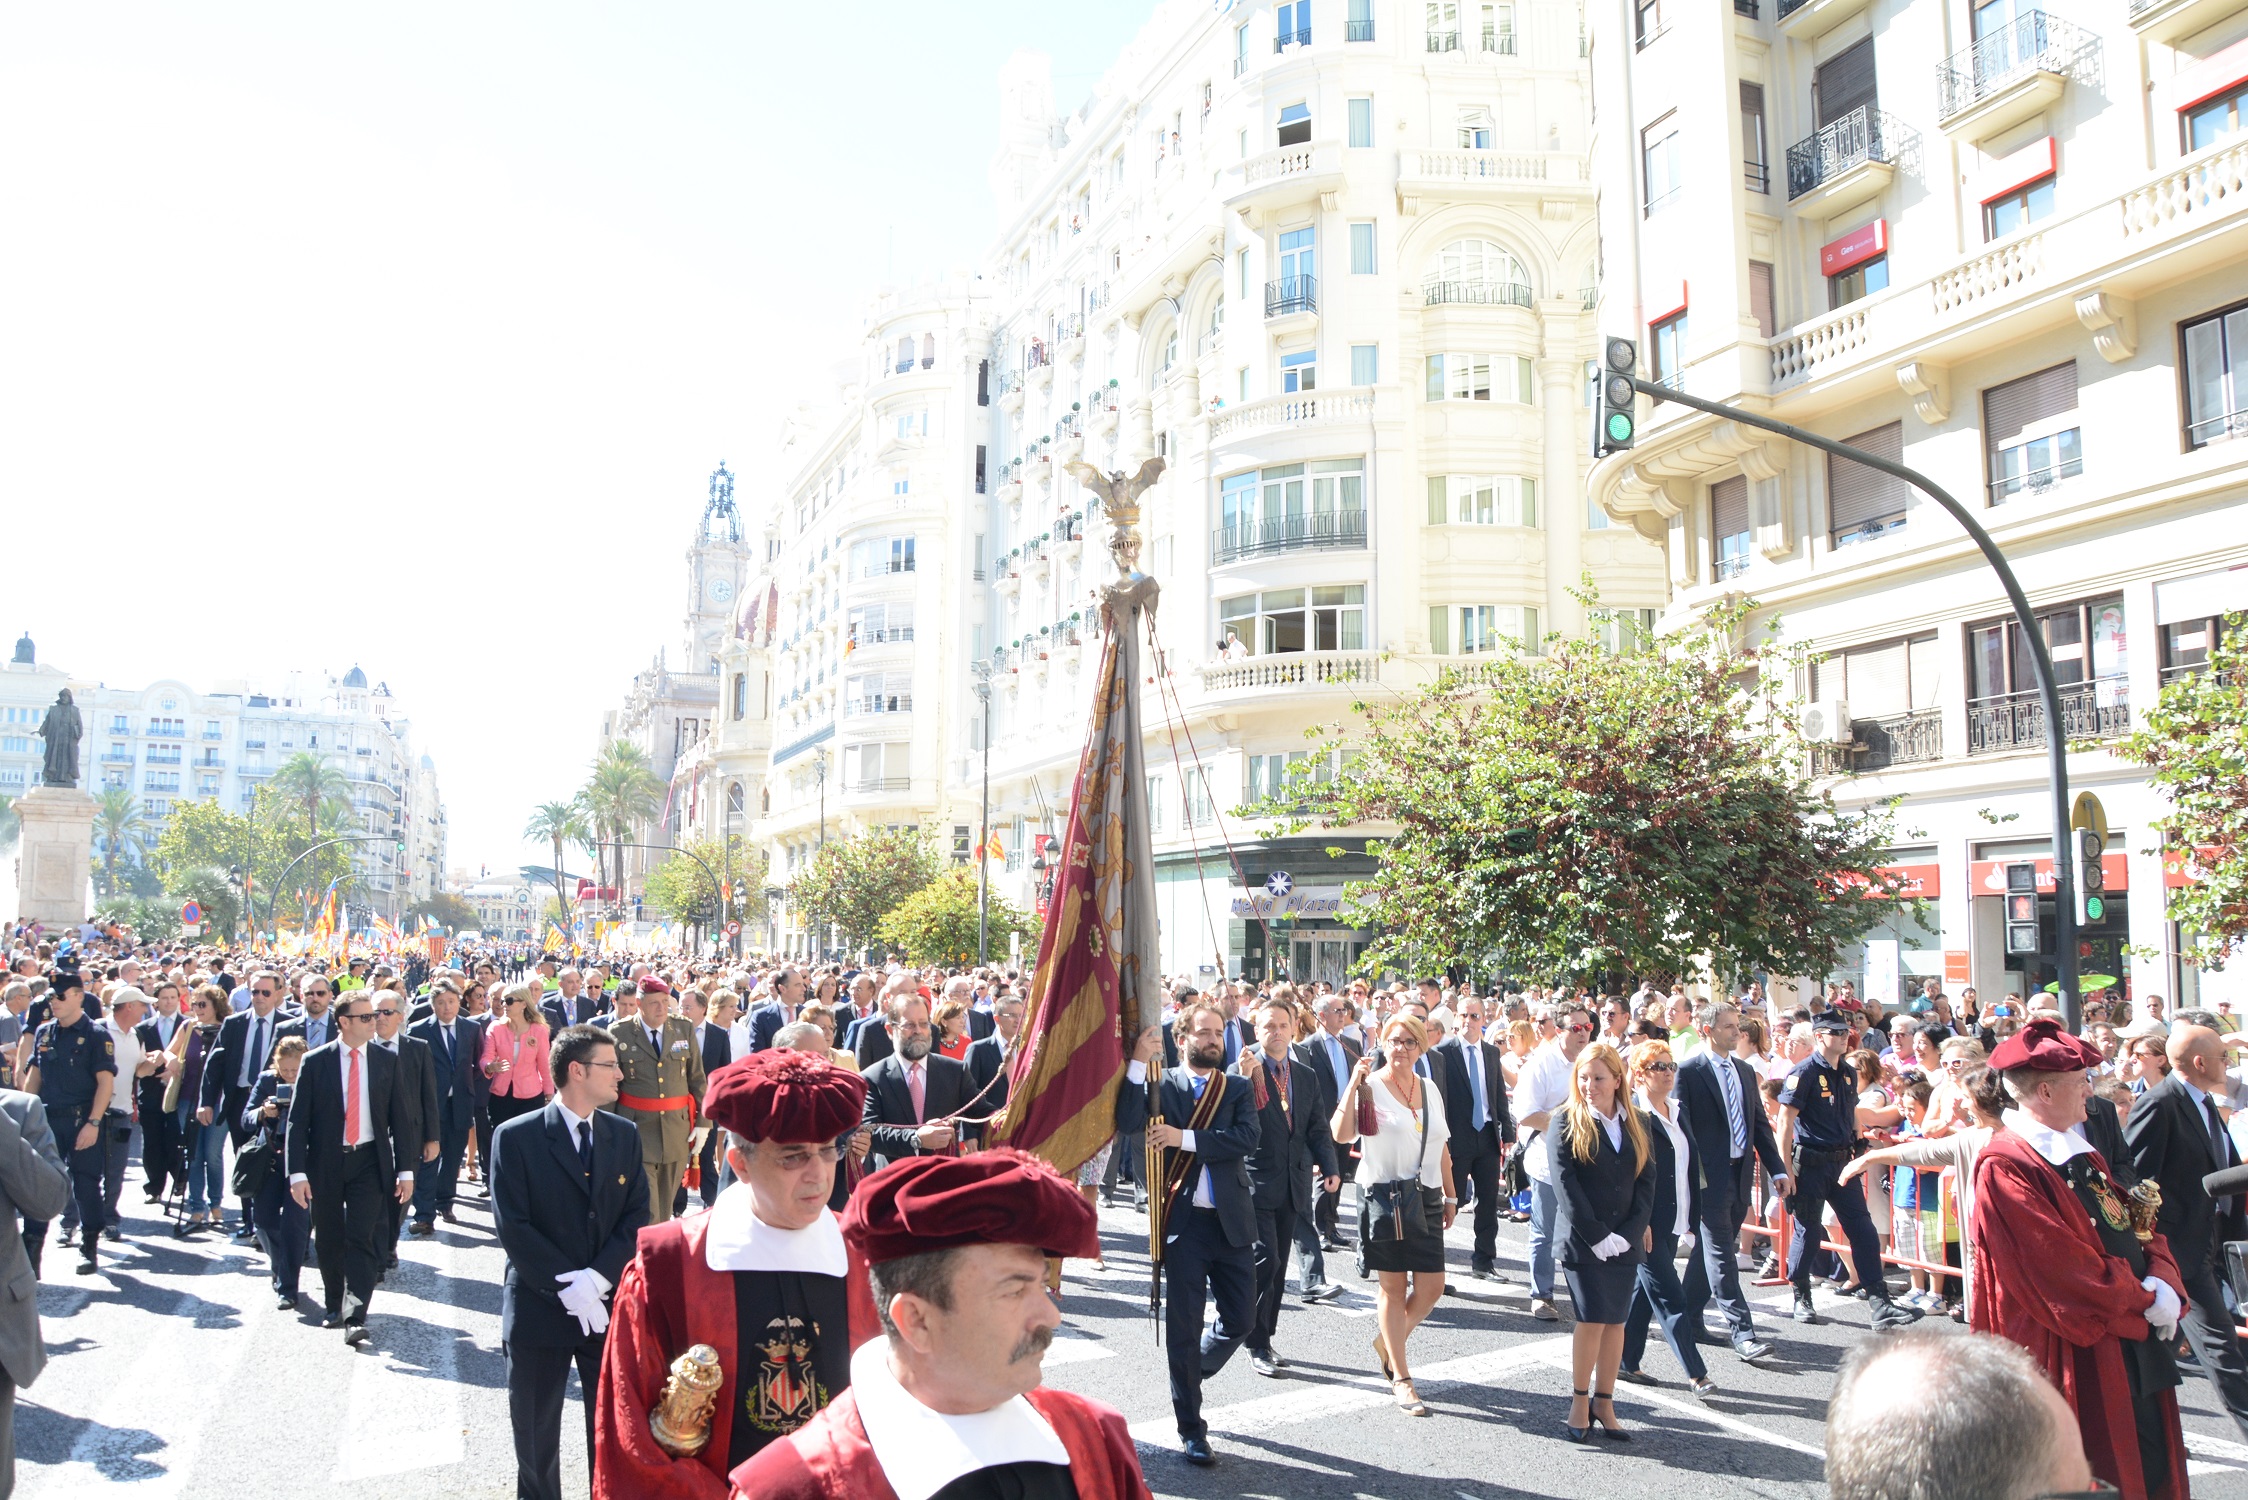 Declaració de Bé d’Interés Cultural Immaterial de la processó cívica del Nou d’Octubre a València.